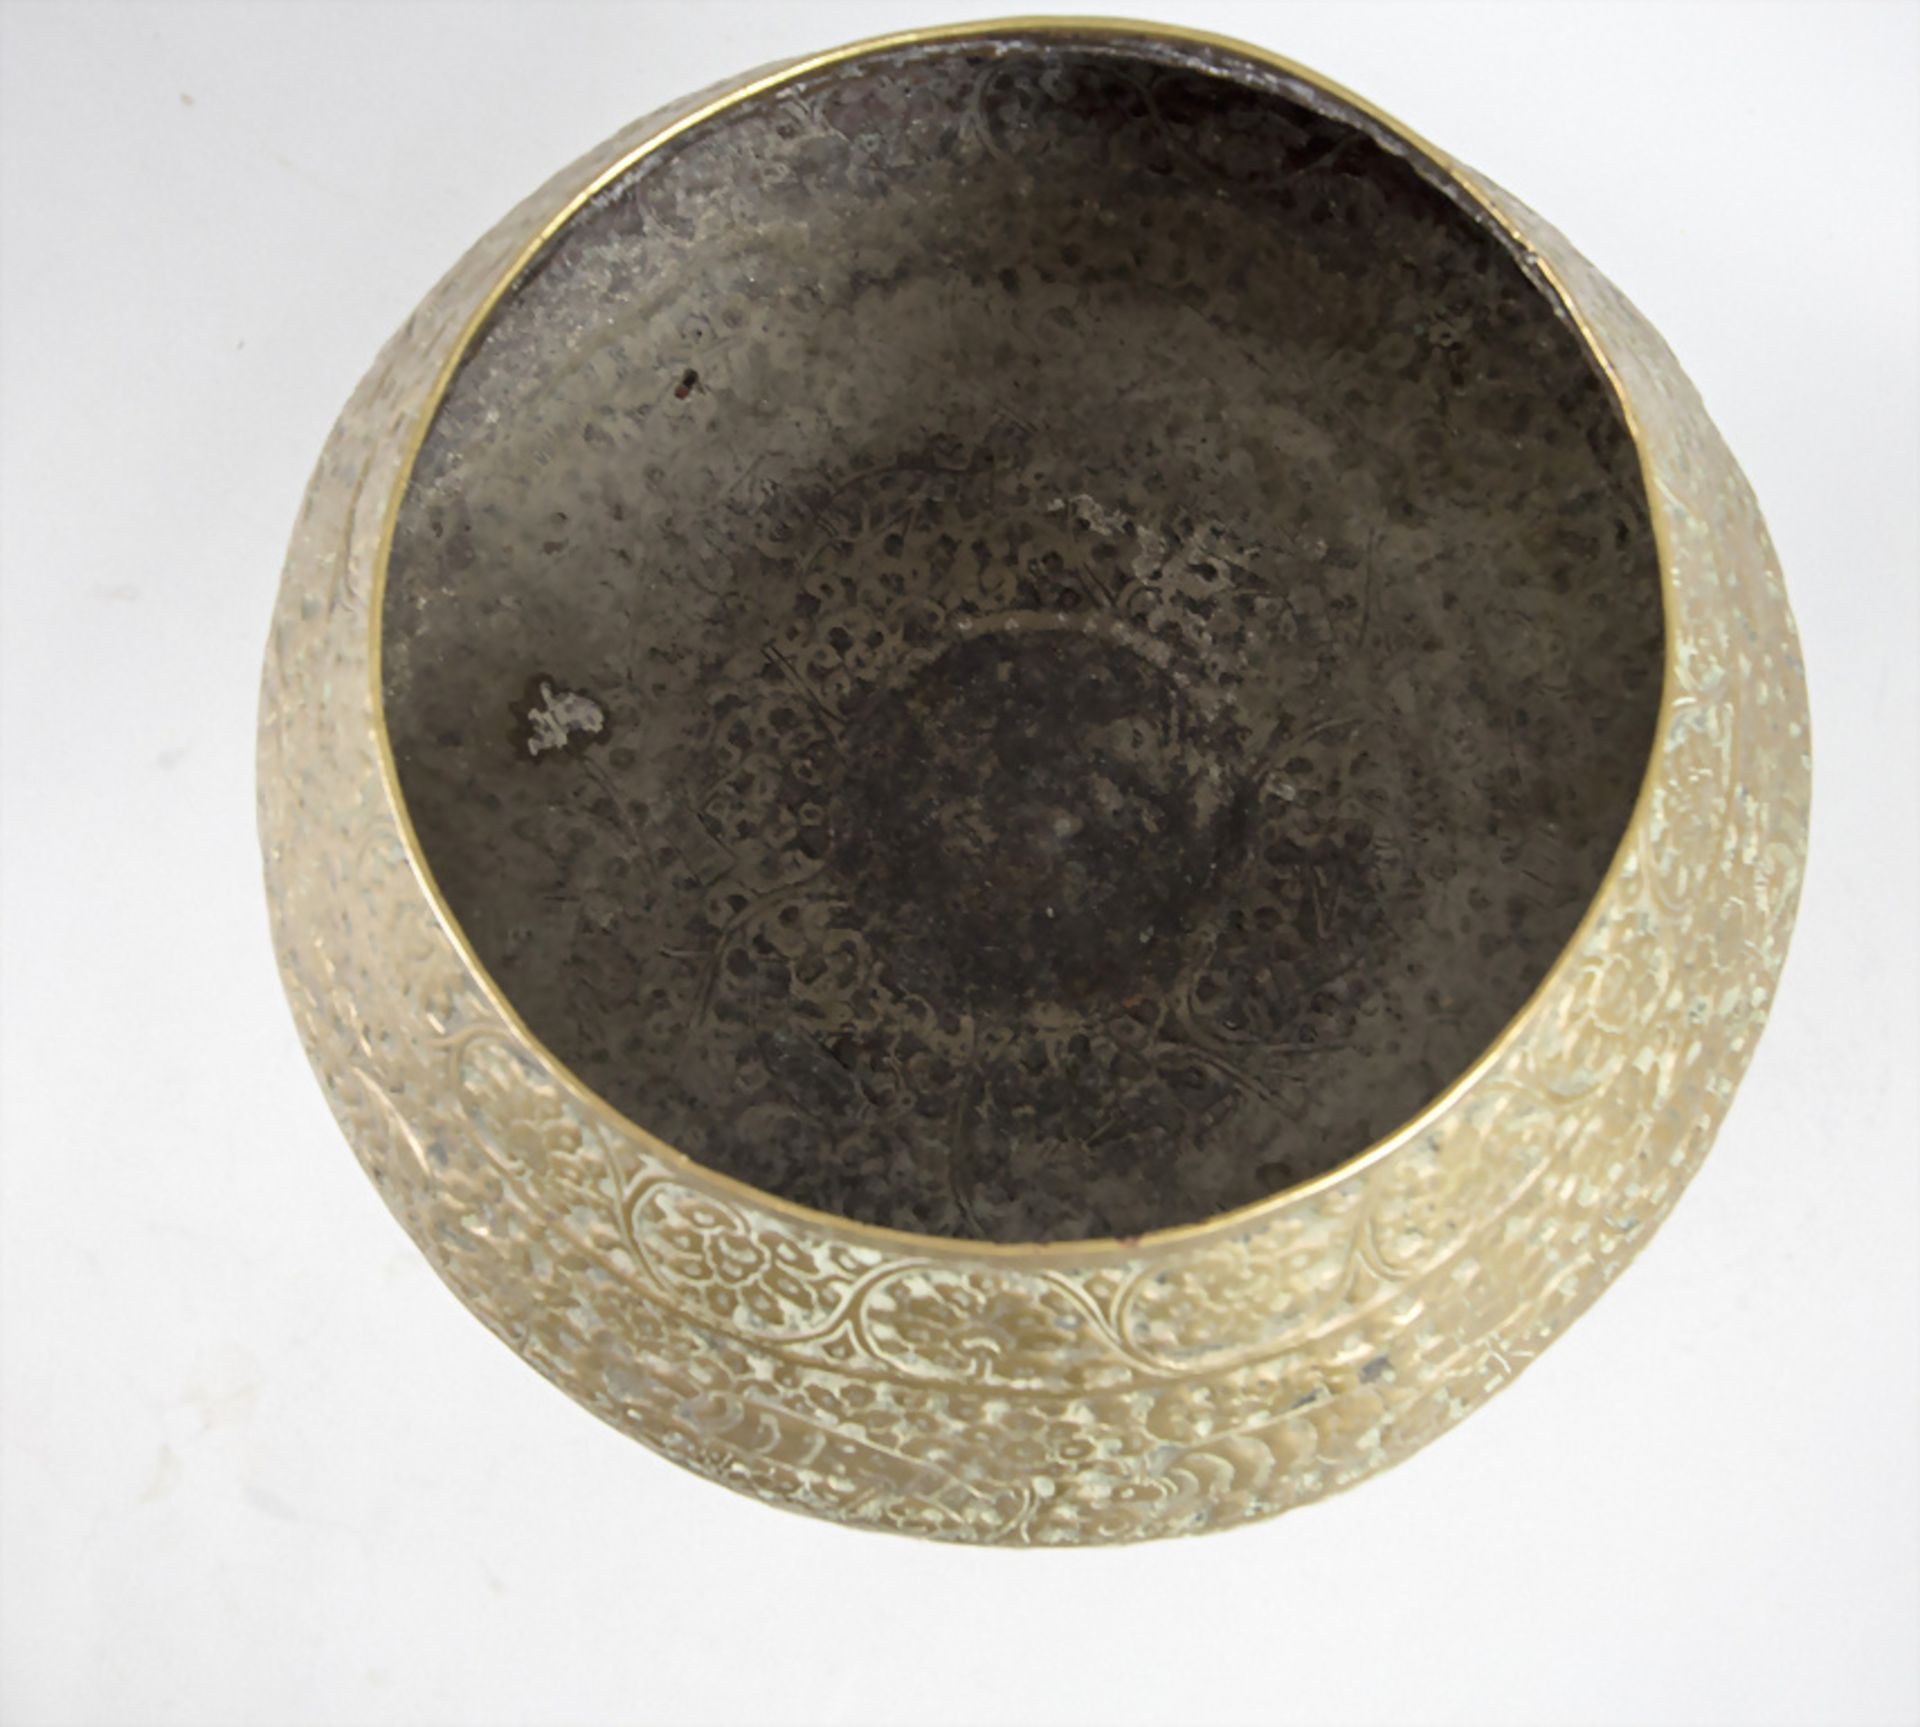 Orientalische Fußschale / An Oriental footed bowl, wohl Persien, um 1920 - Image 5 of 6